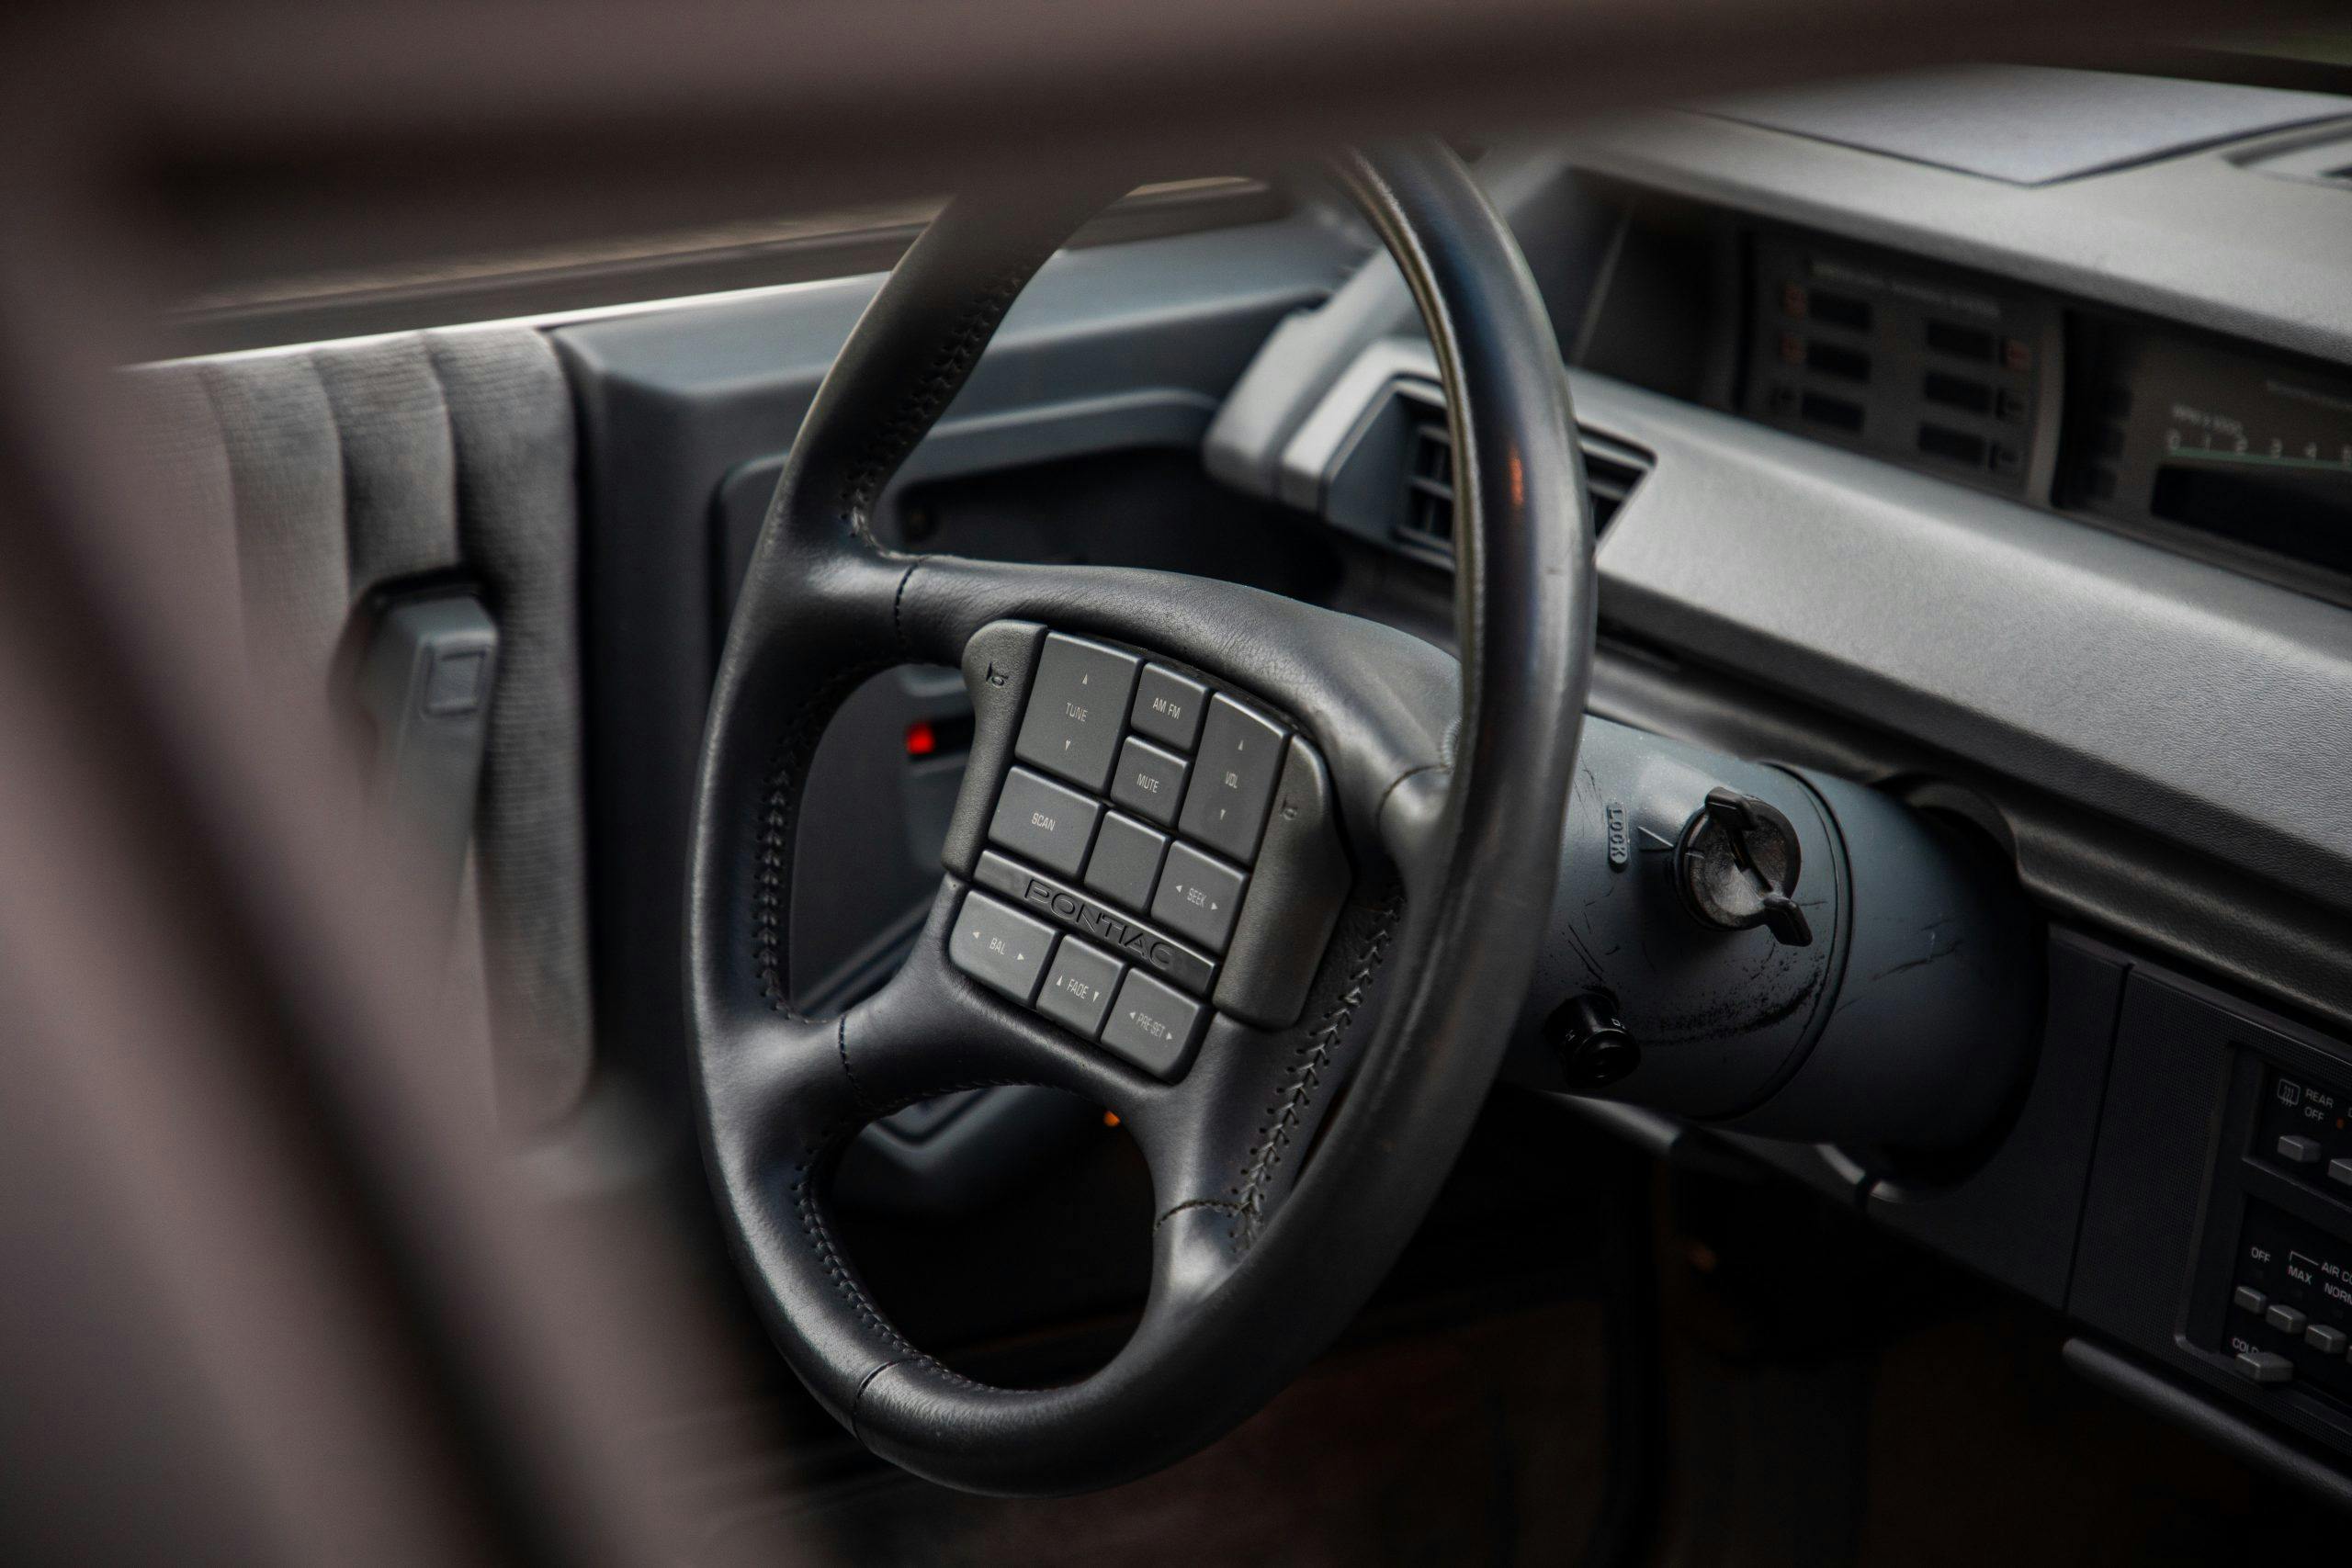 1989 Pontiac 6000STE AWD steering wheel